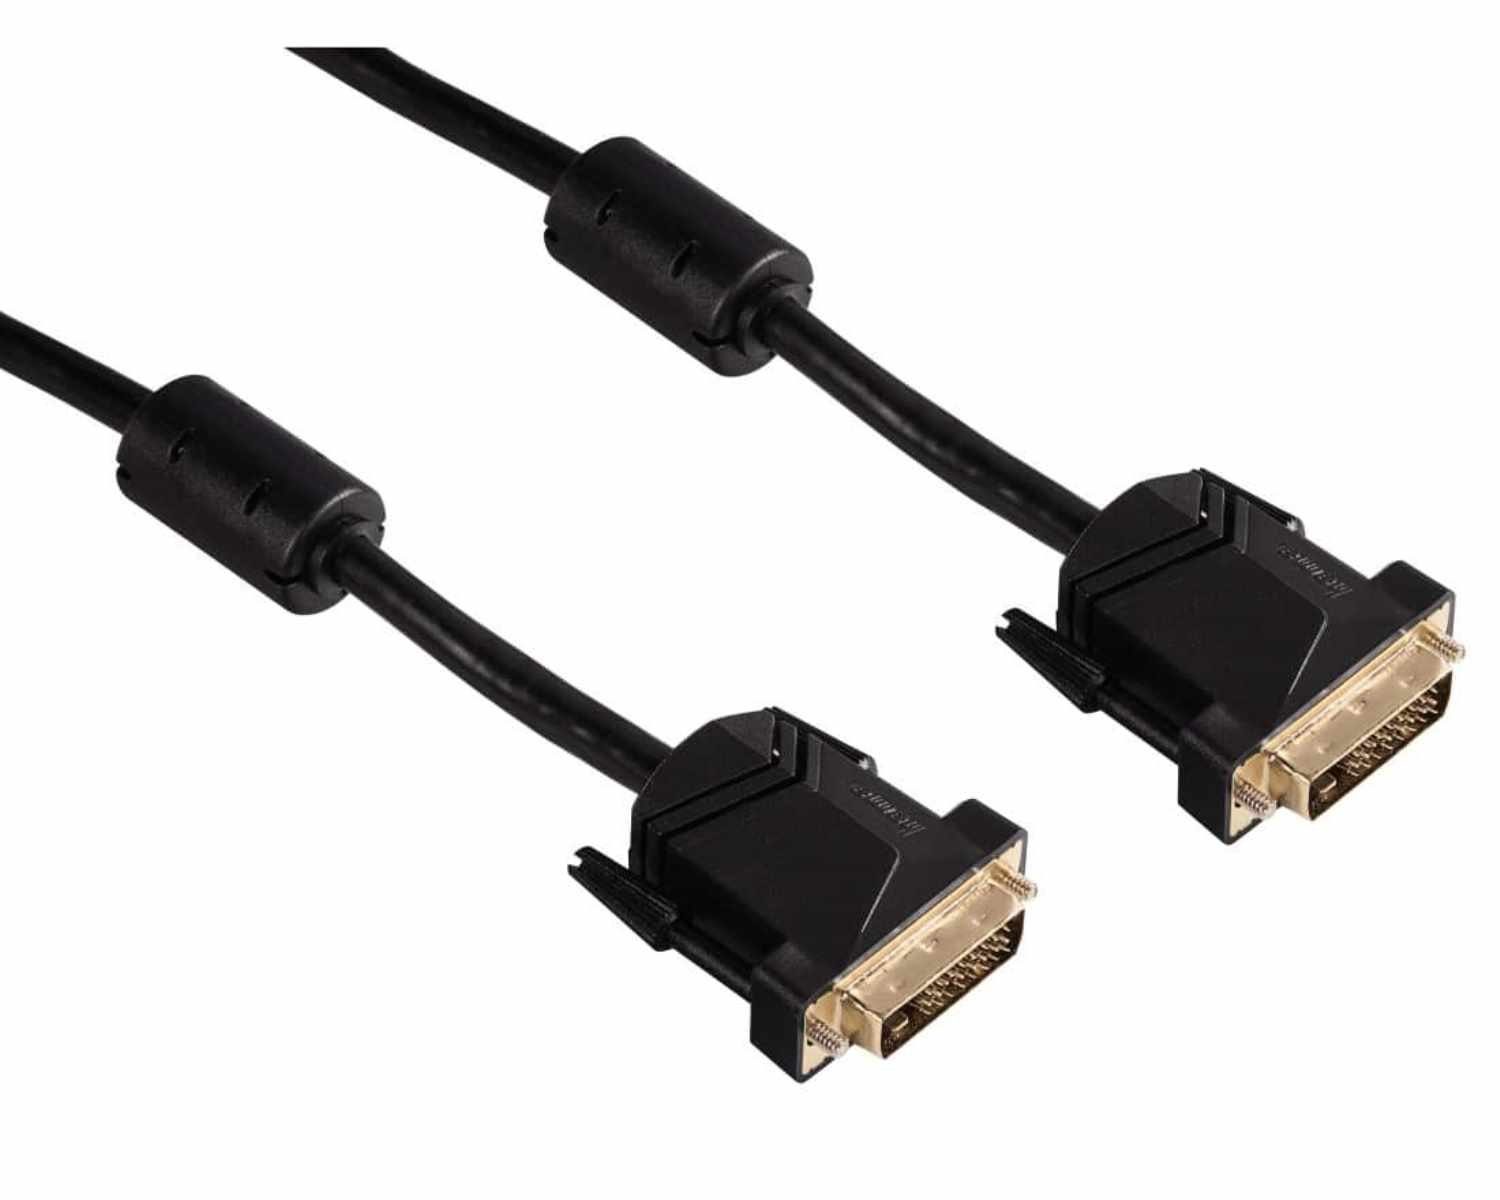 Hama HQ 3m DVI-Kabel DVI-D 24+1 Pol. vergoldet Video-Kabel, DVI-D, (300 cm), Anschlusskabel Monitor 2x DVI-D 24+1 Dual-Link Stecker